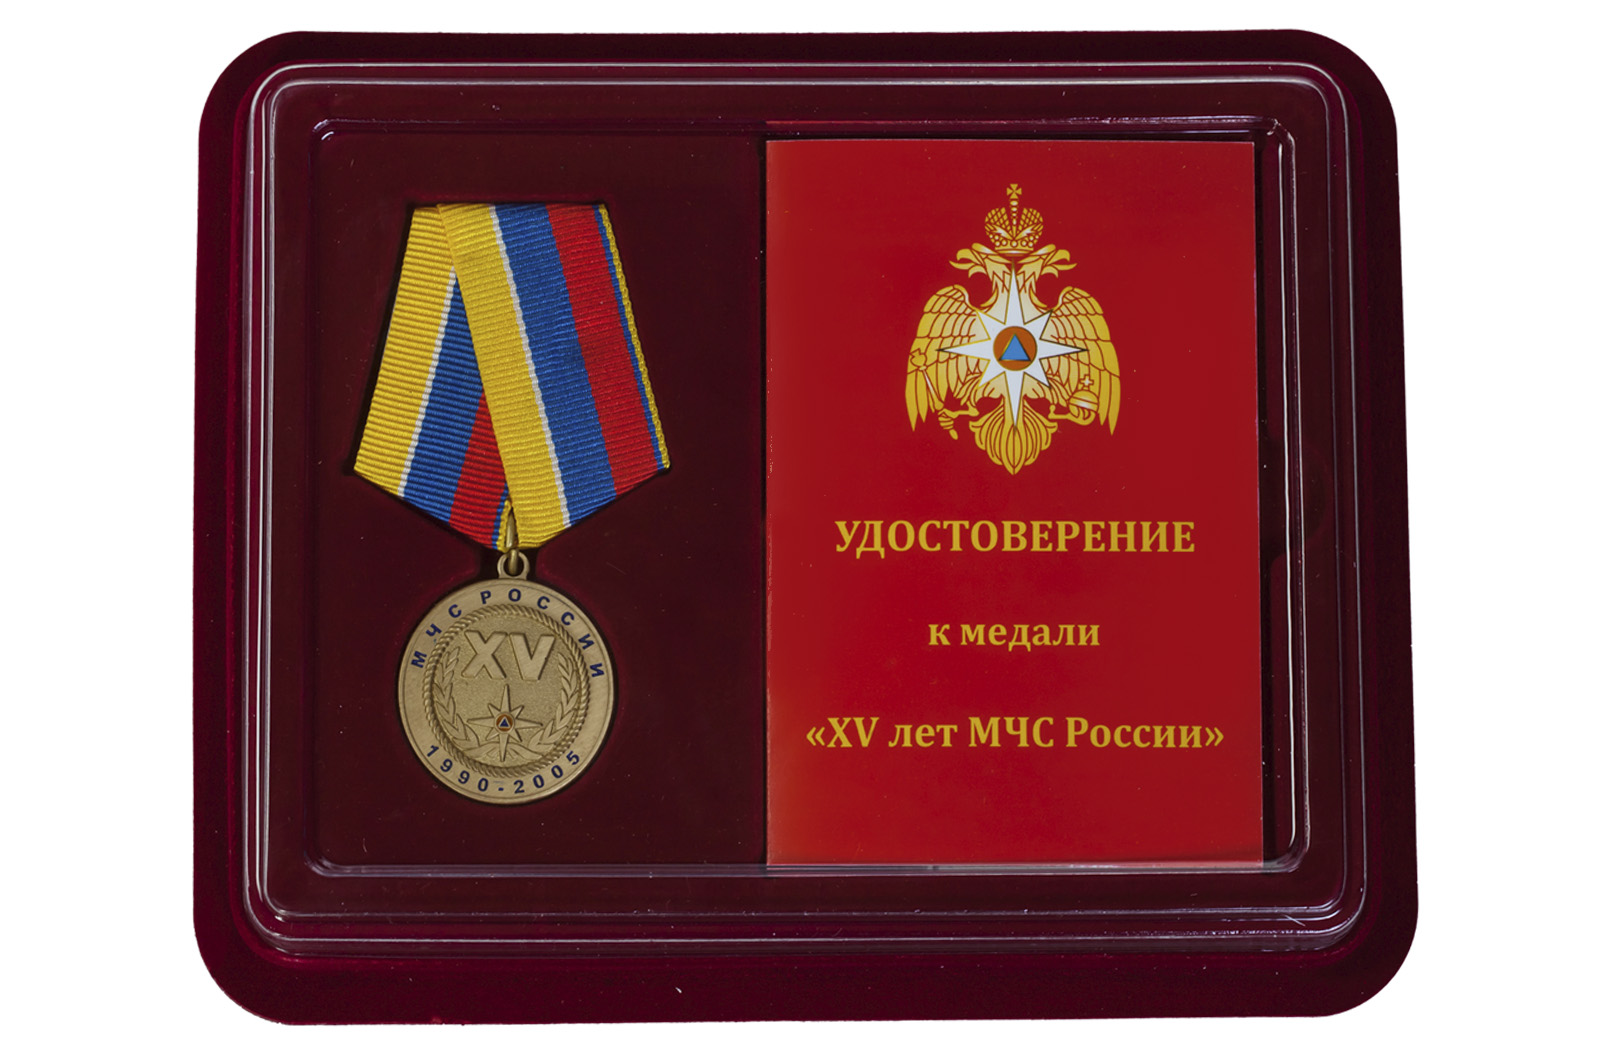 Купить медаль За особые заслуги МЧС России в подарок мужчине